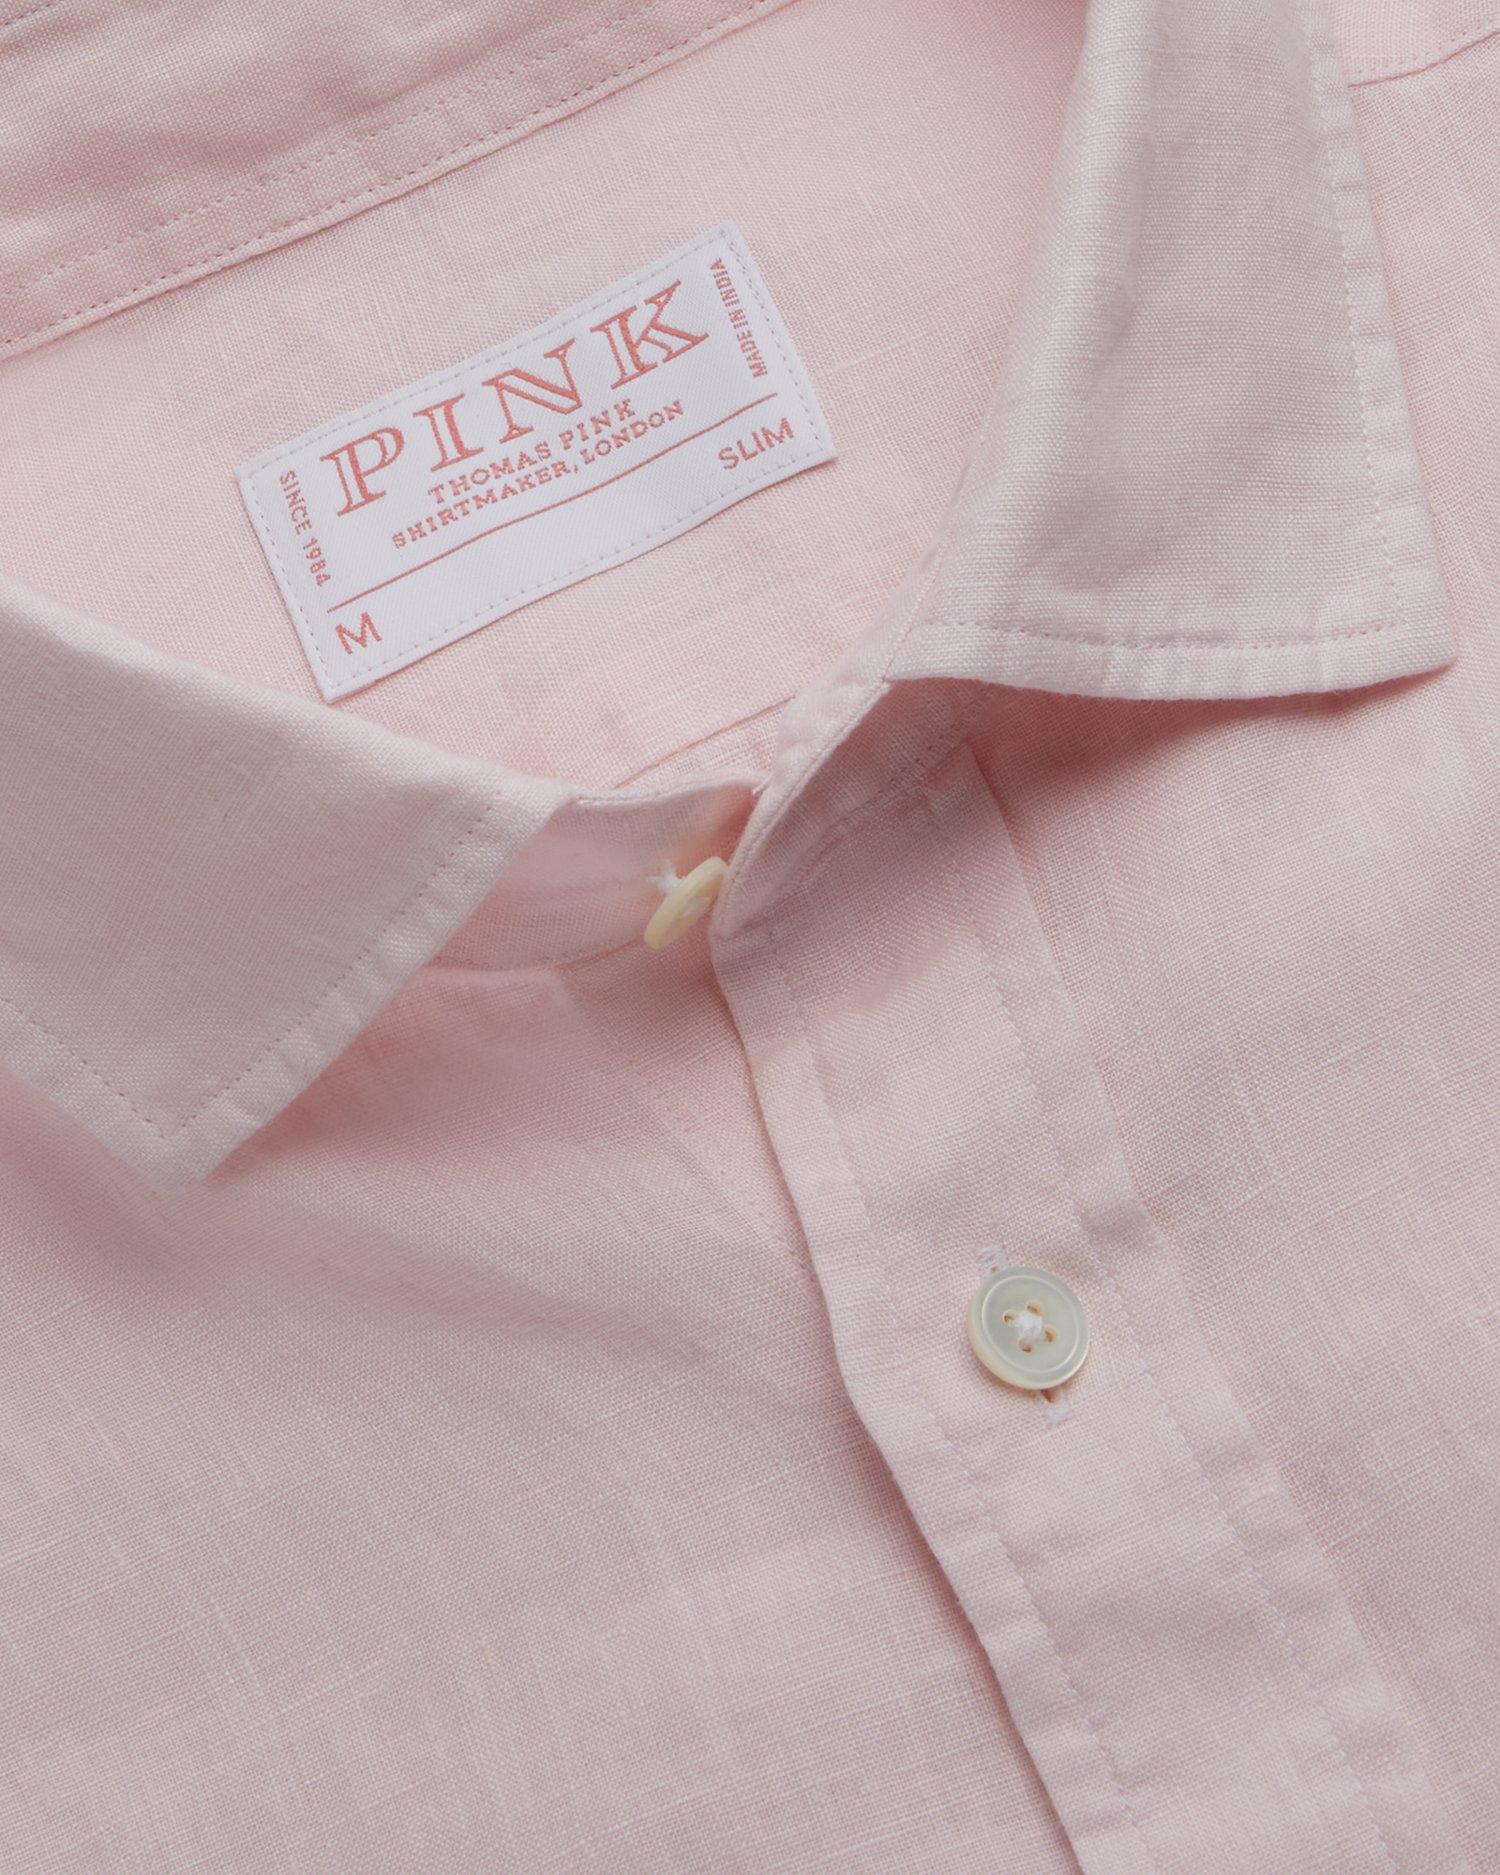 Pink Shirtmaker London Shirts - Thomas Pink Relaunched as Pink Shirtmaker  London